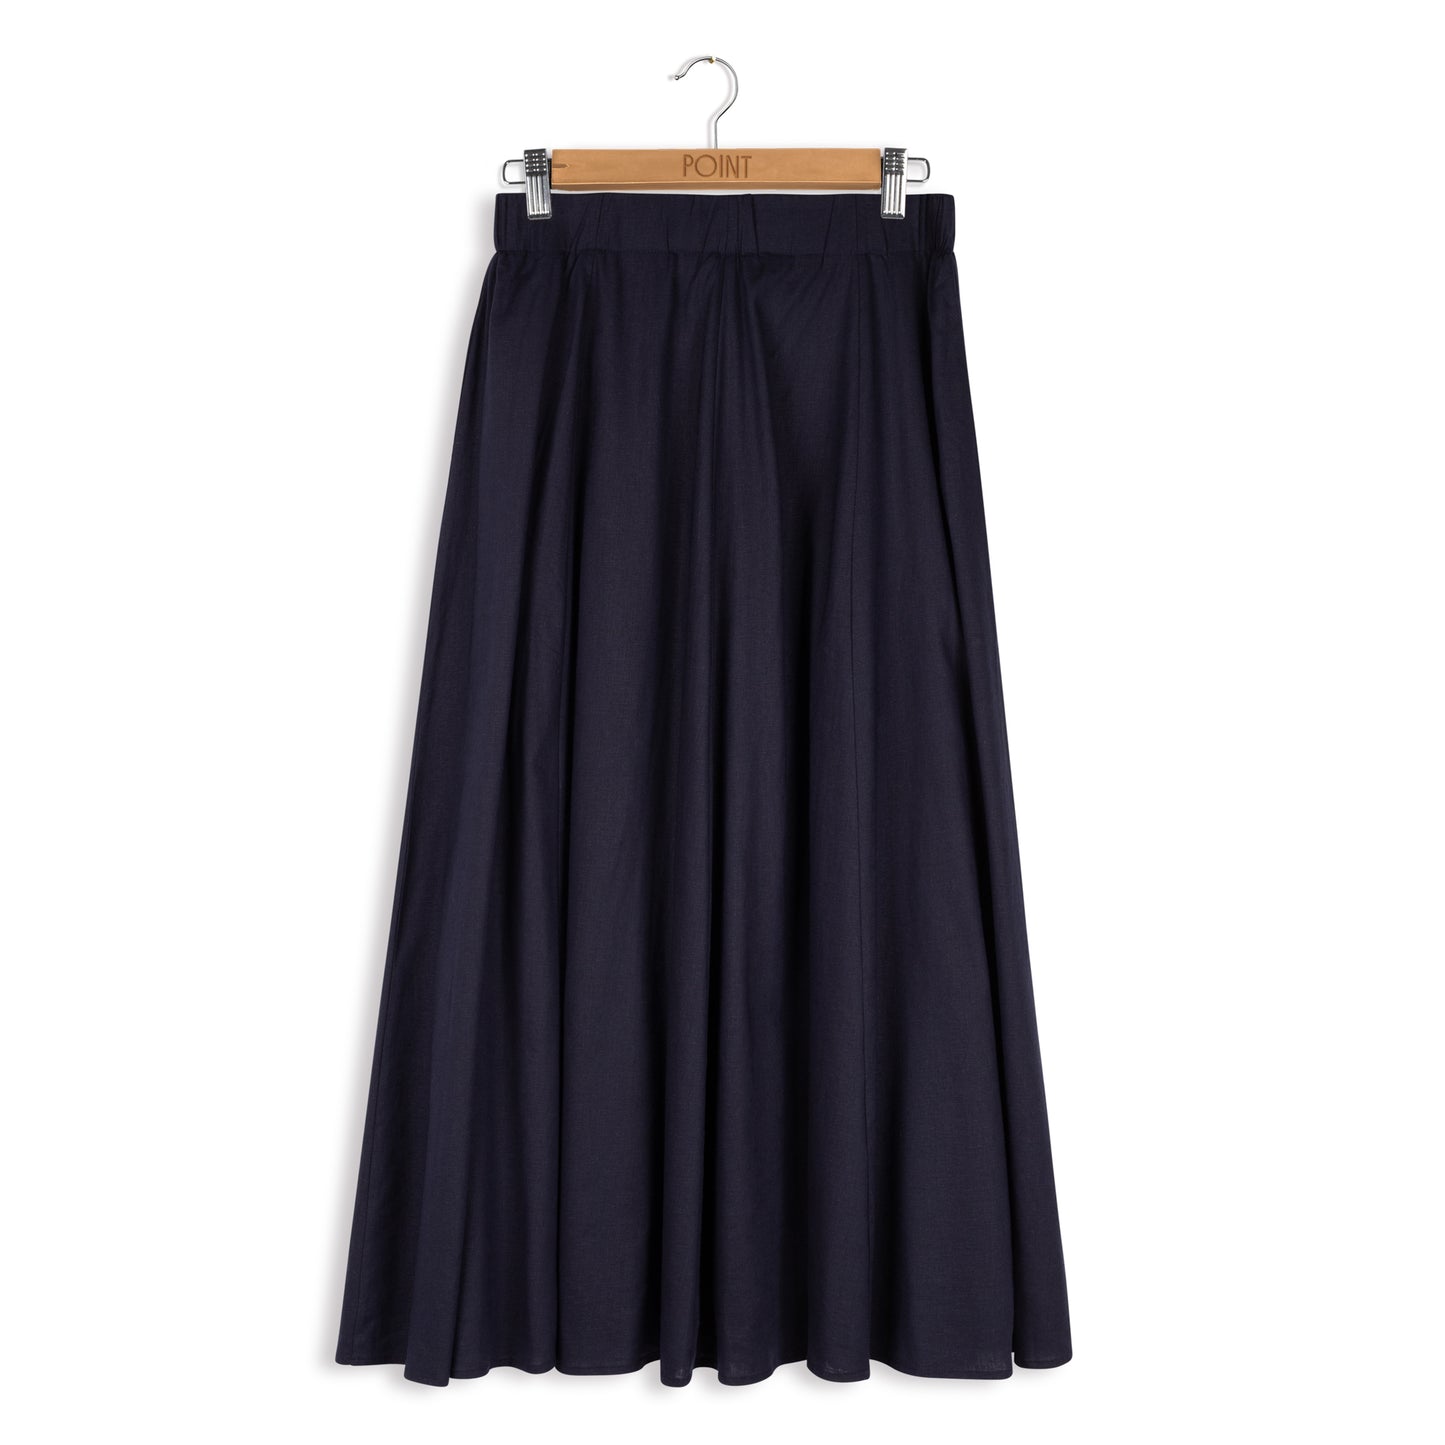 point stretch linen skirt